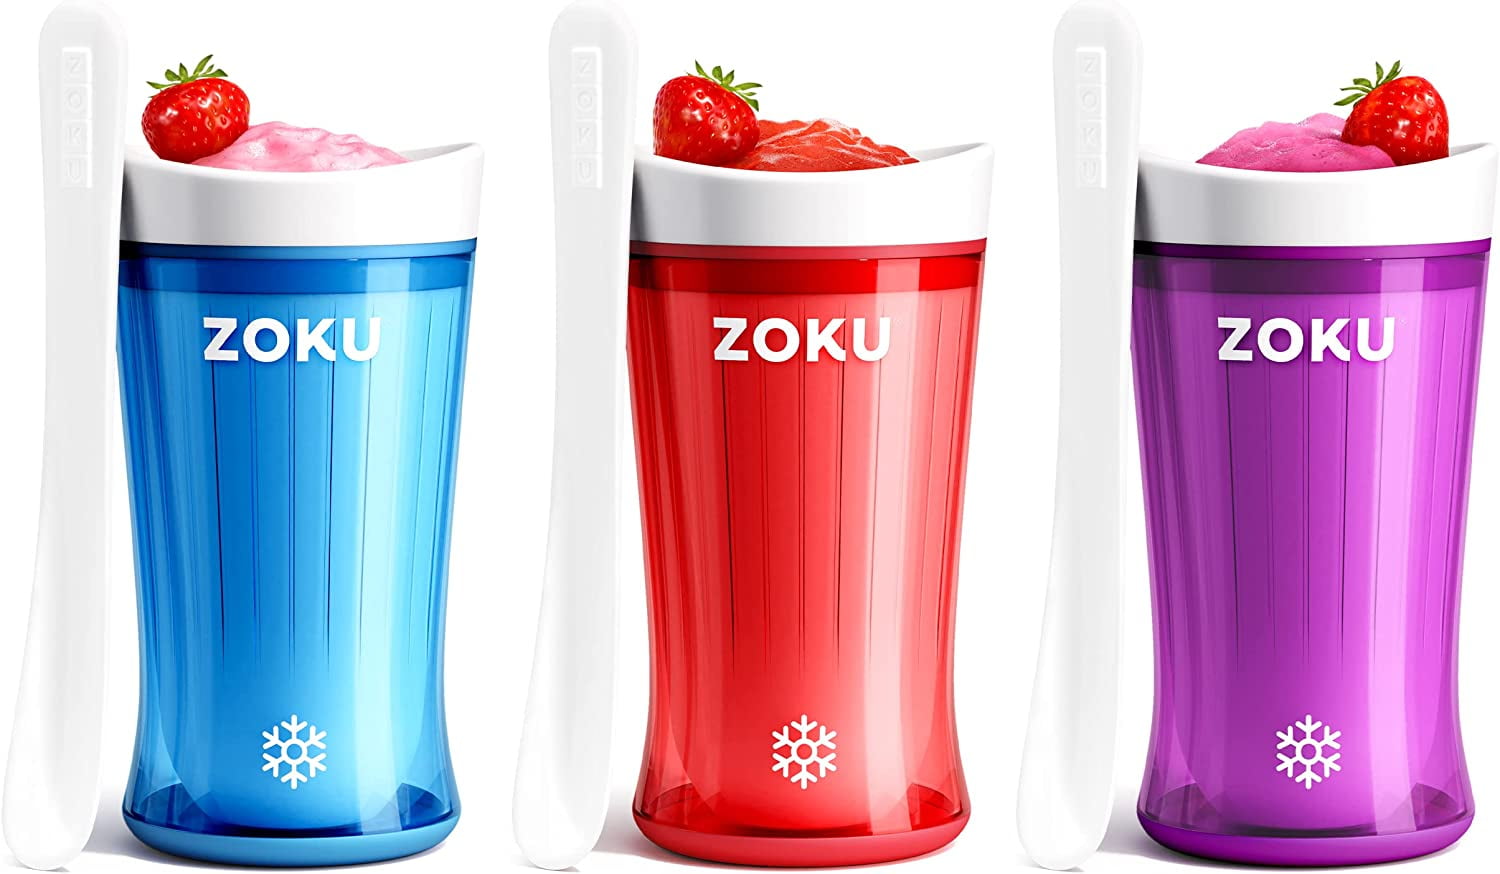 Zoku Blue Slush & Shake Maker